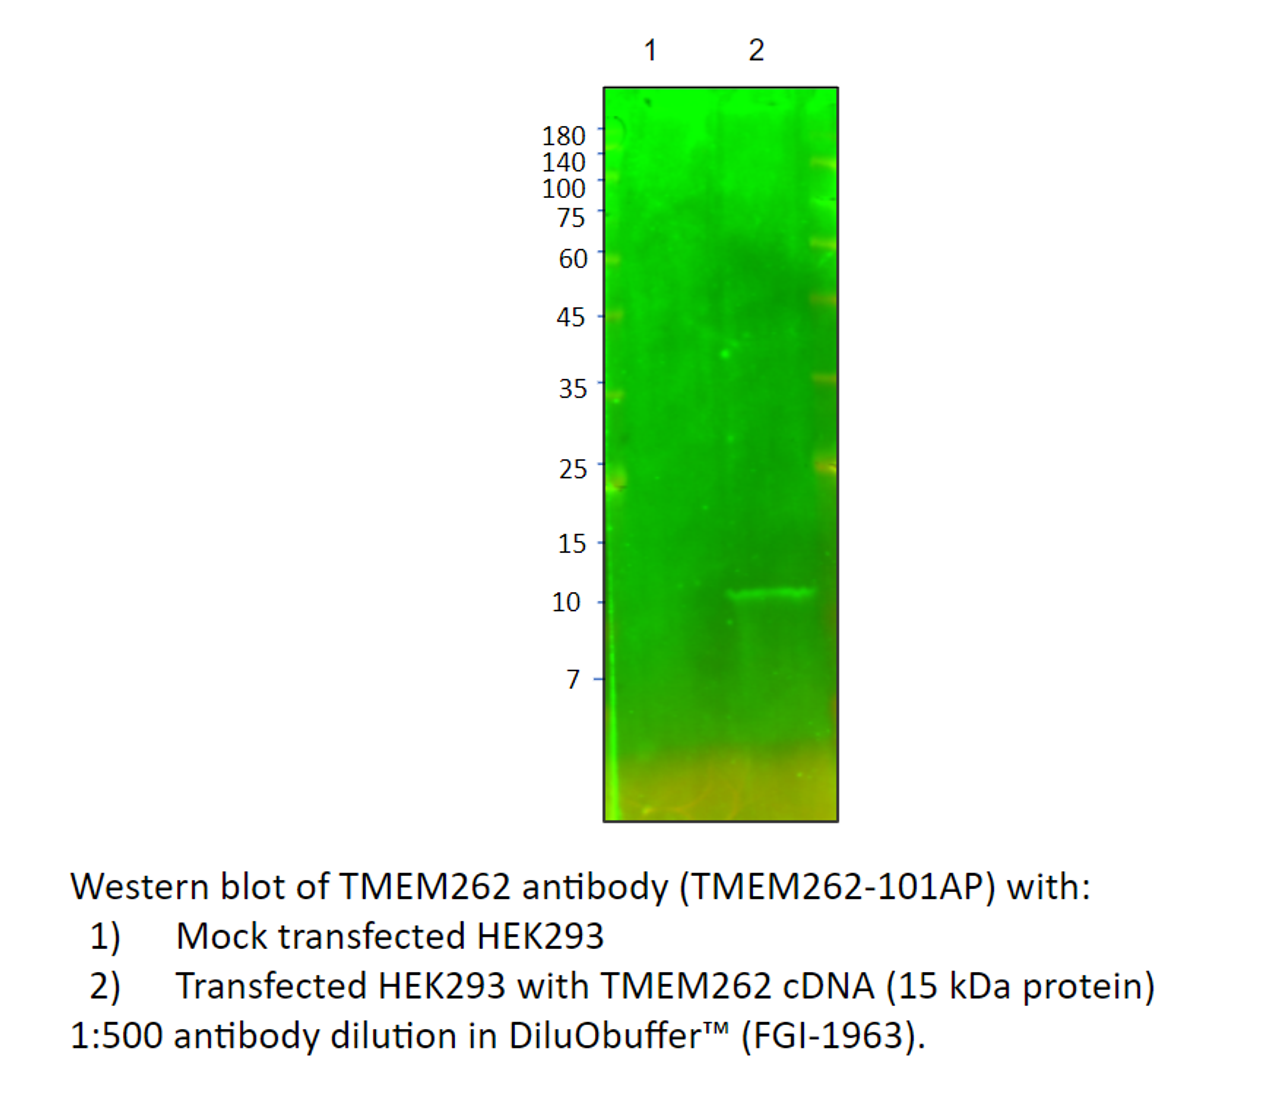 TMEM262 Antibody from Fabgennix